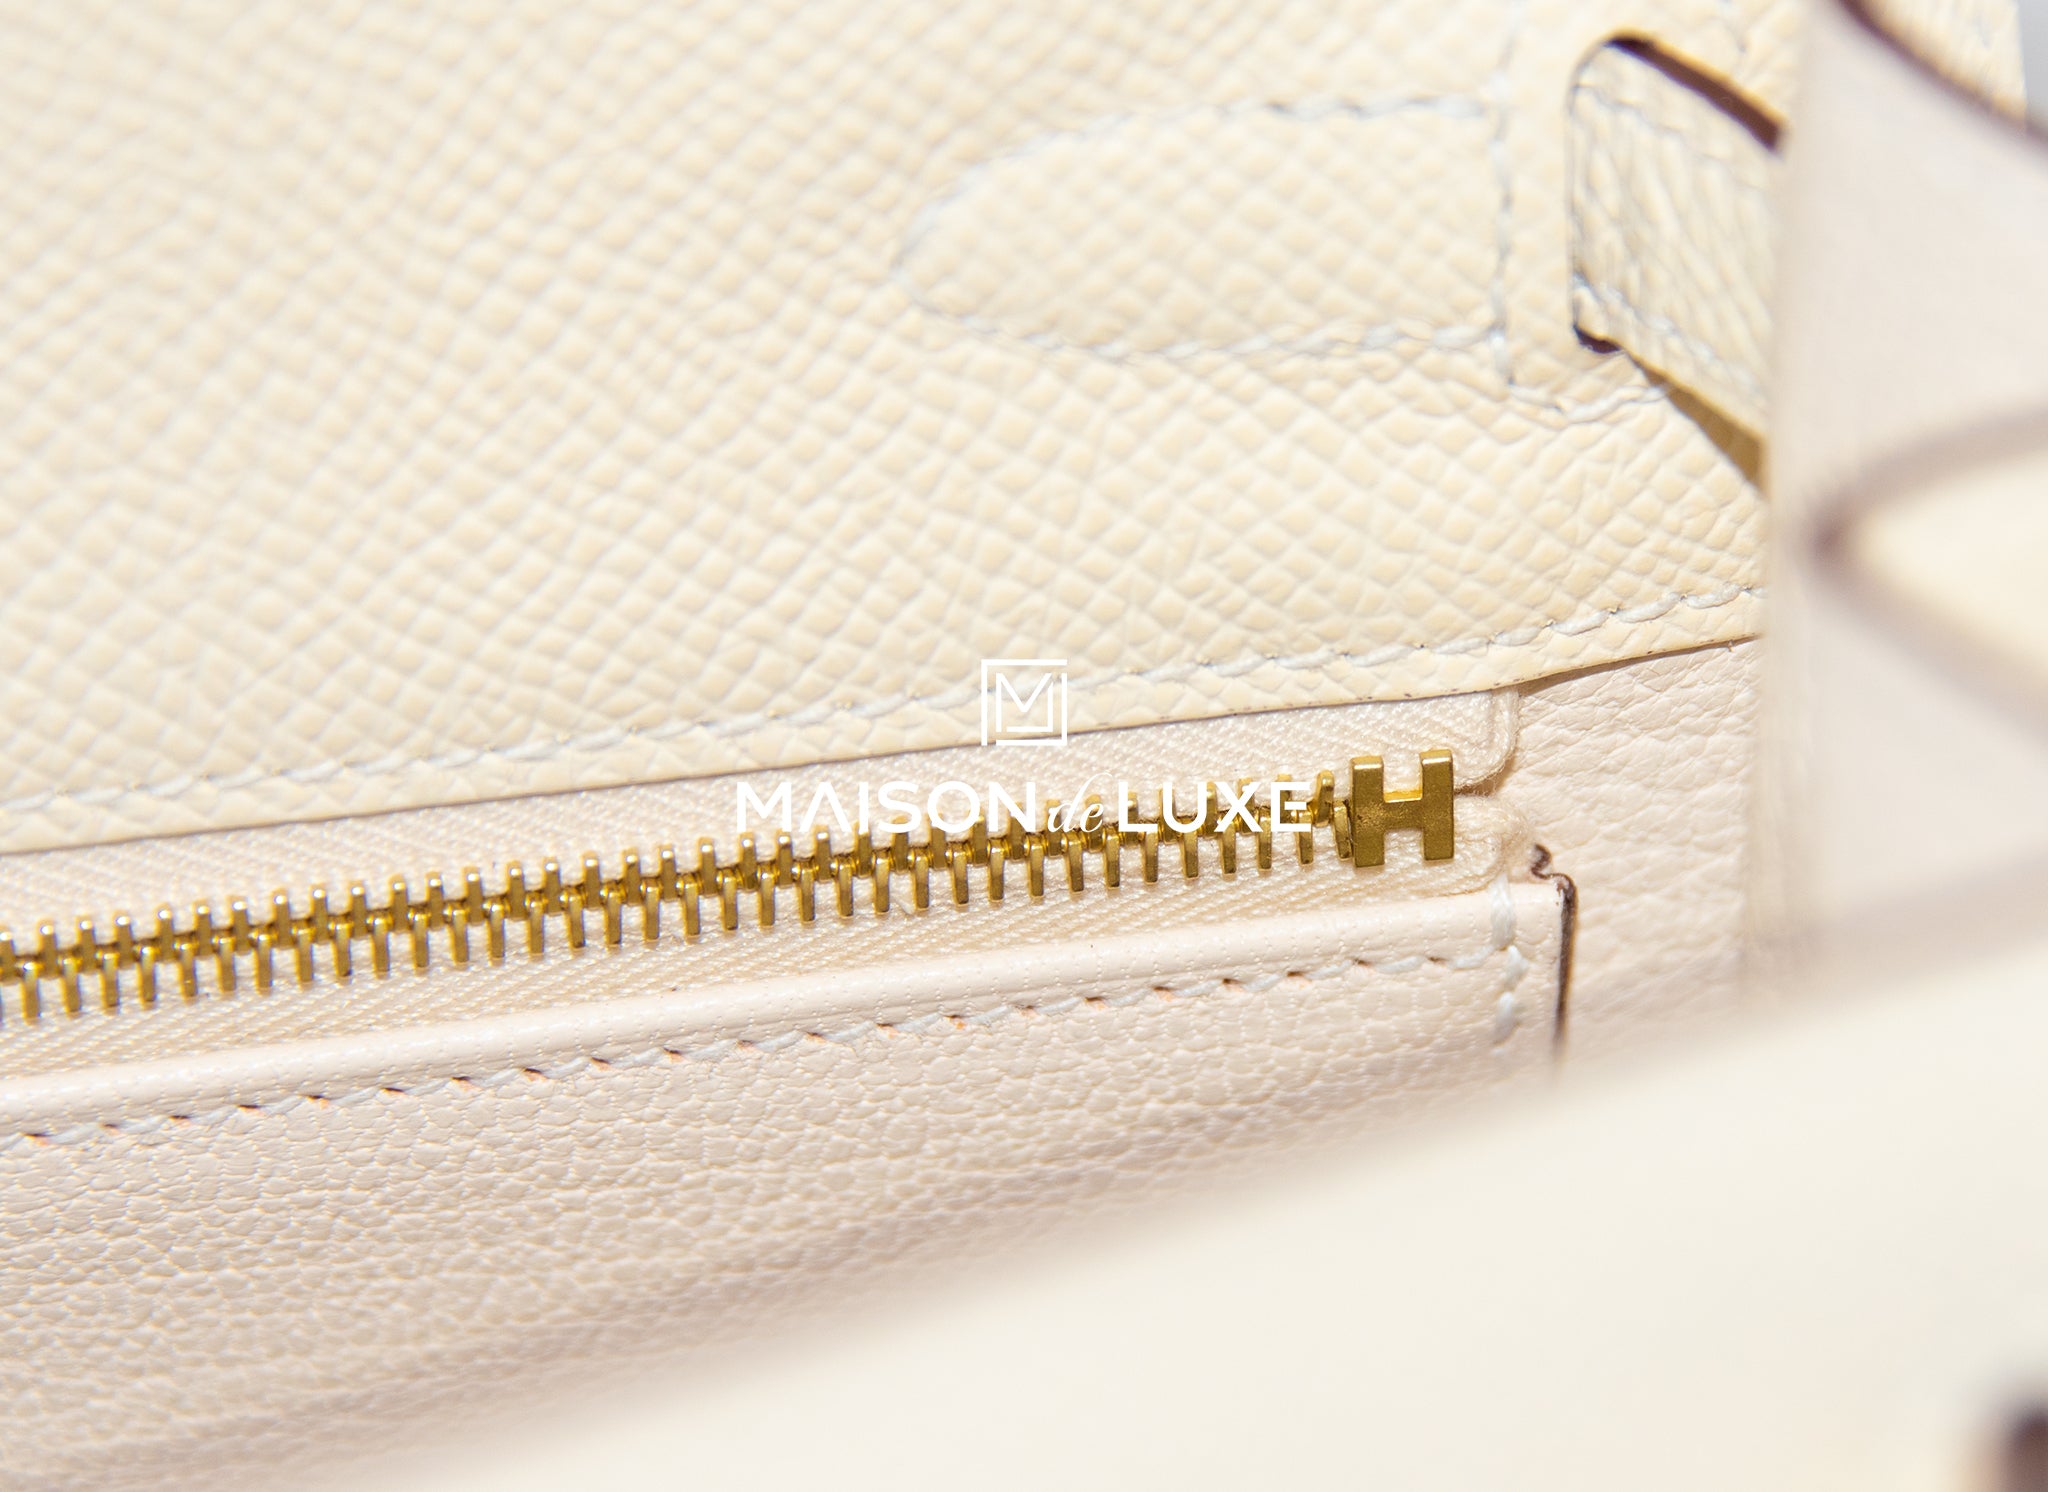 Hermes Kelly 25 Sellier Nata Epsom Gold Hardware Leather Handbags